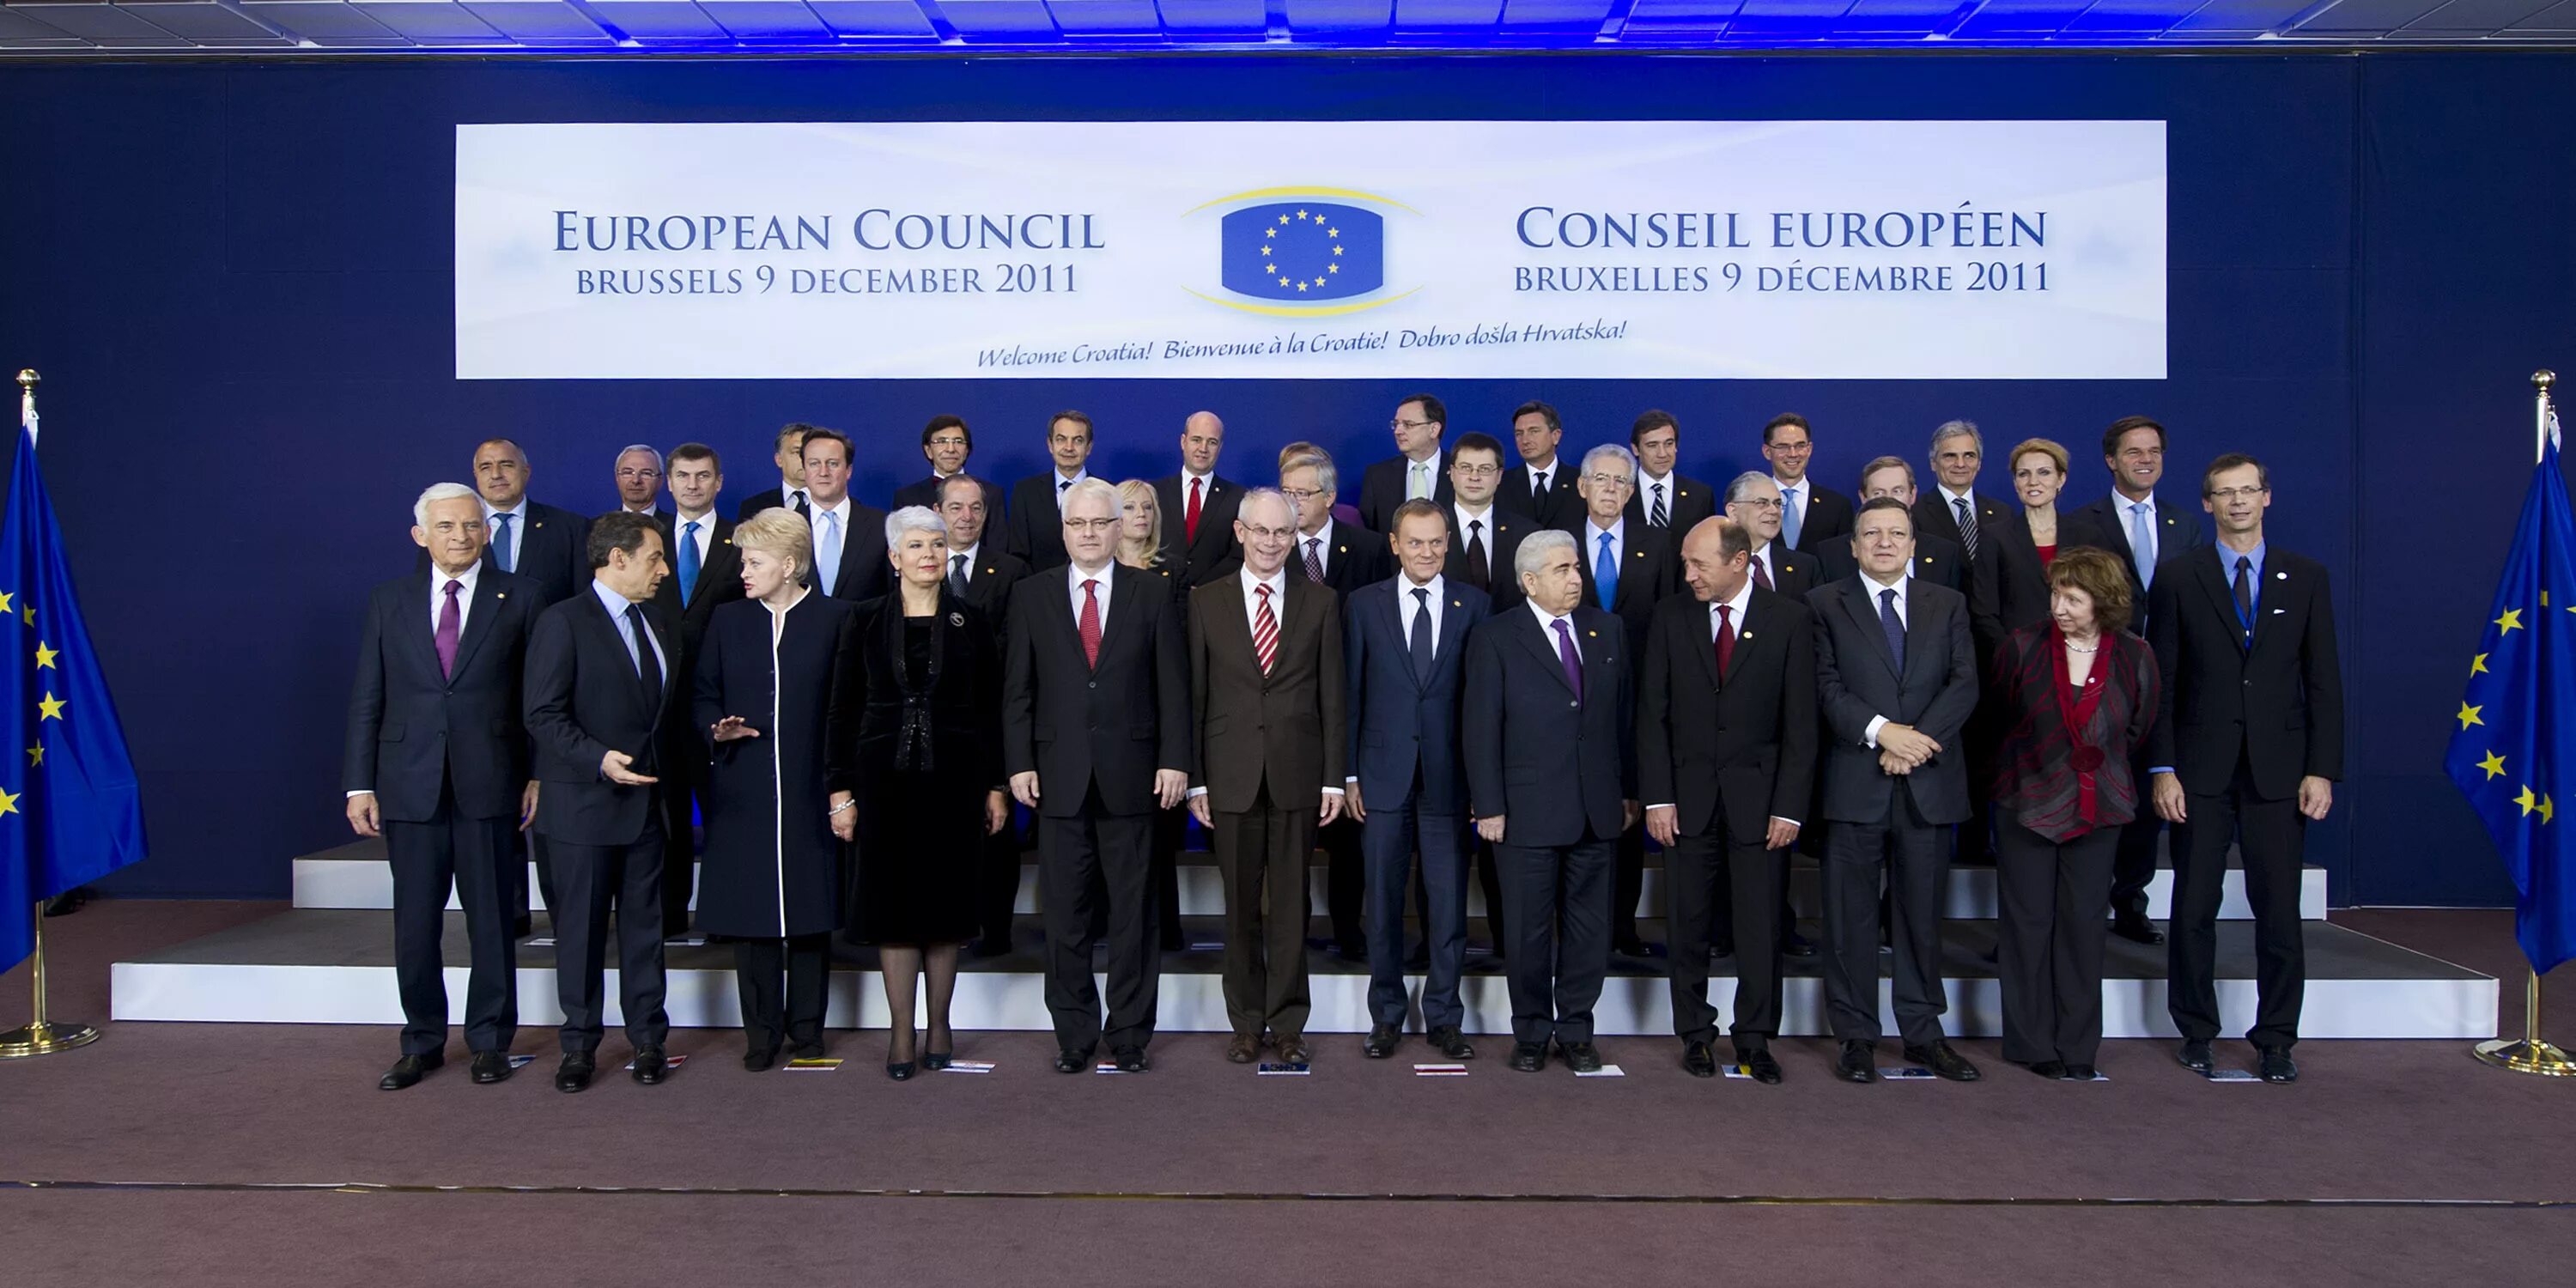 Eu council. European Council. Европейский совет события. Council of the European Union. European Council functions.